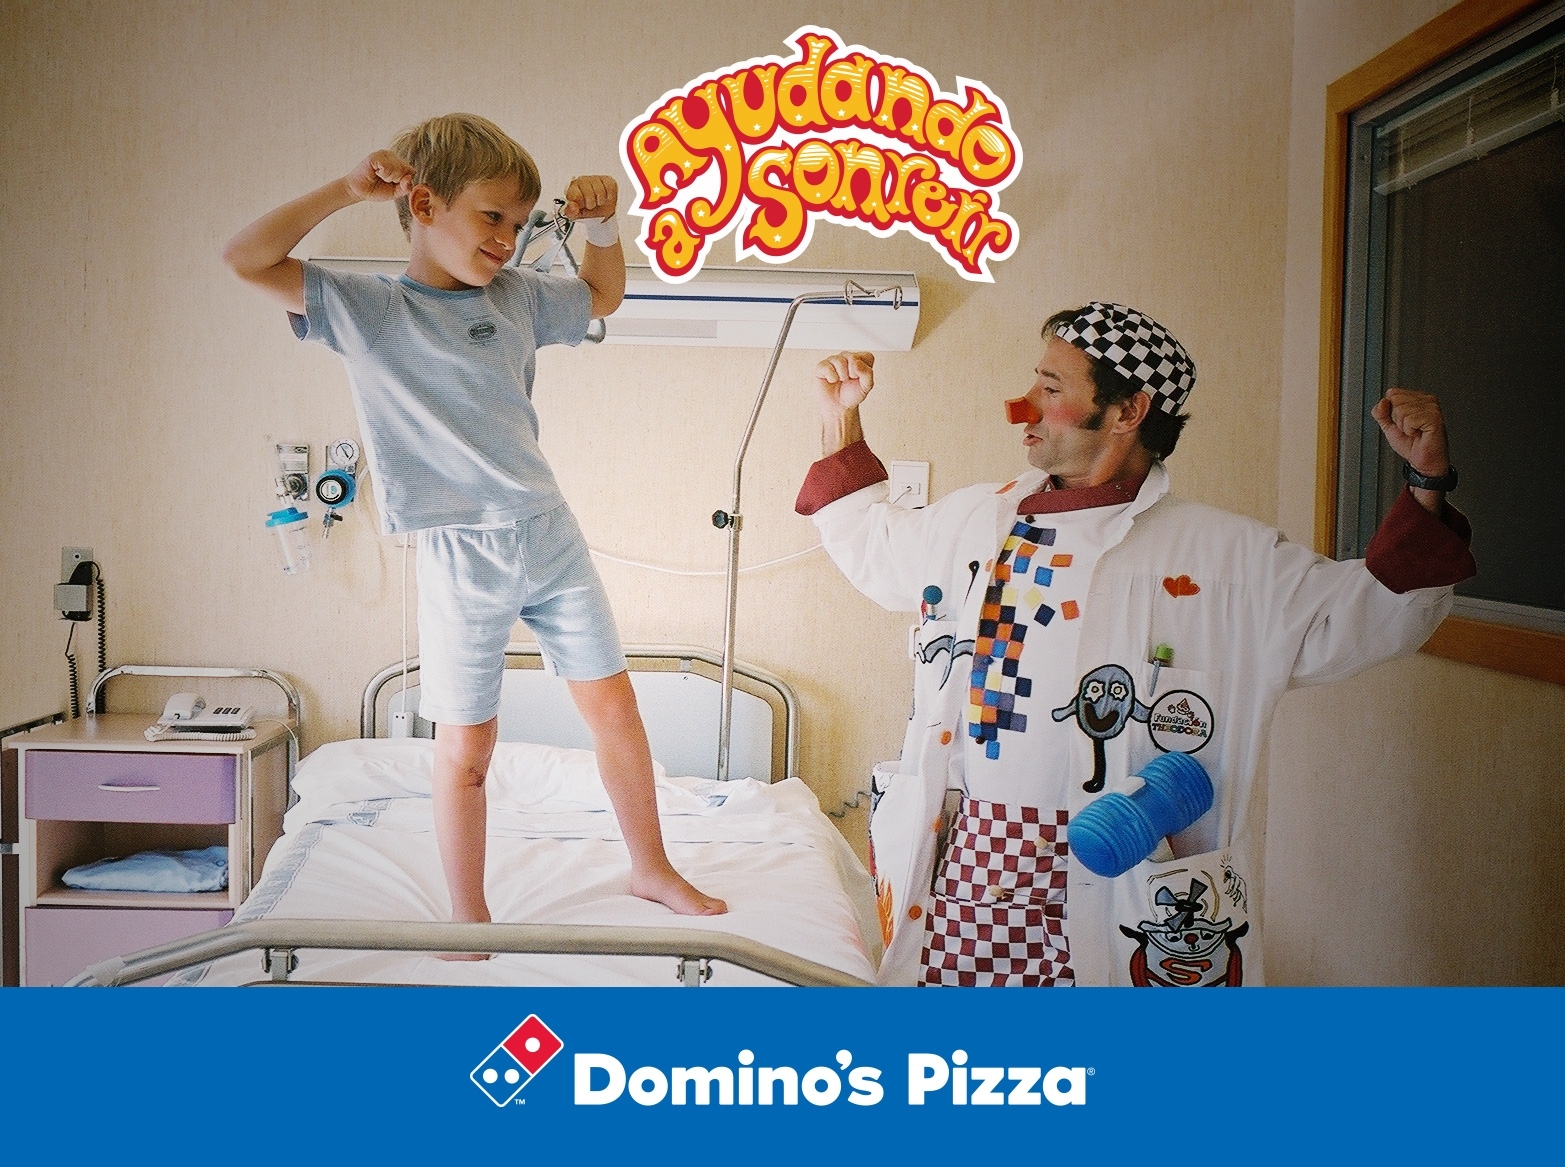 Domino's Pizza regala sonrisas a los niños hospitalizados